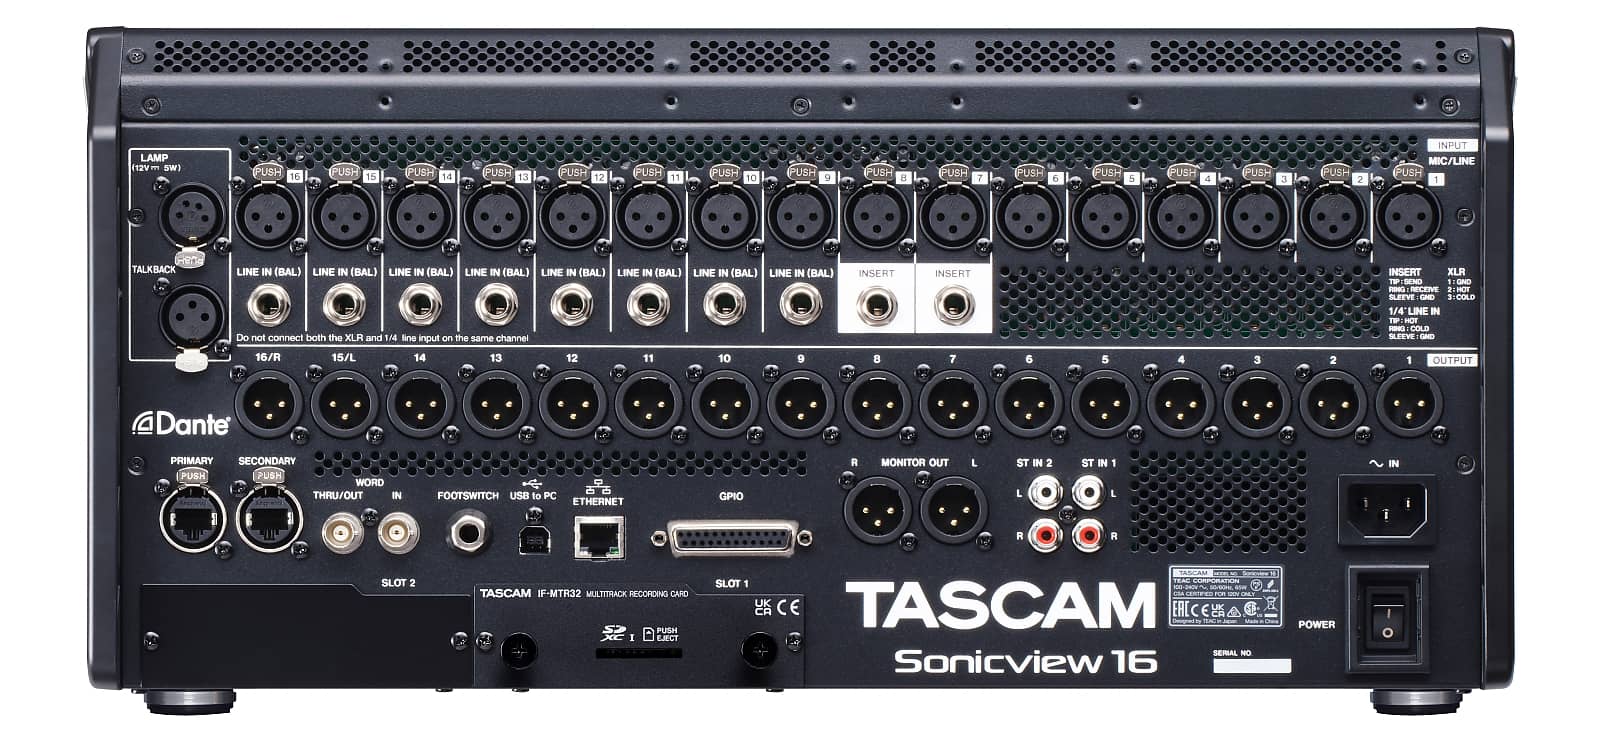 Vue arrière (avec l’IF-MTR32 installée) | Tascam Sonicview 16